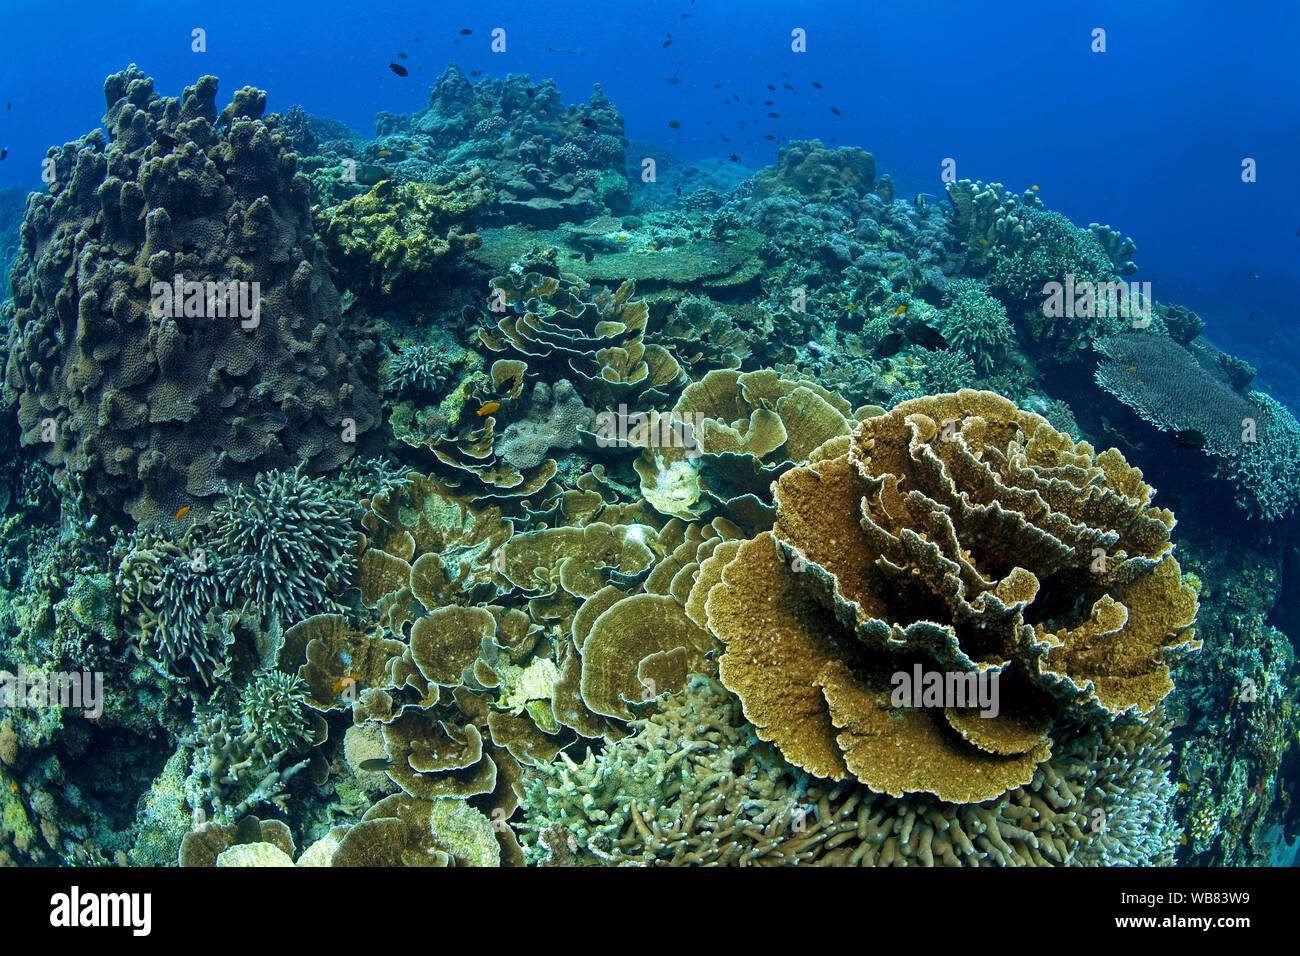 Arrecifes de coral con corales (piedra Acroporidae dominante), Apo- arrecife, Dumaguete, Negros, Visayas, Filipinas Foto de stock